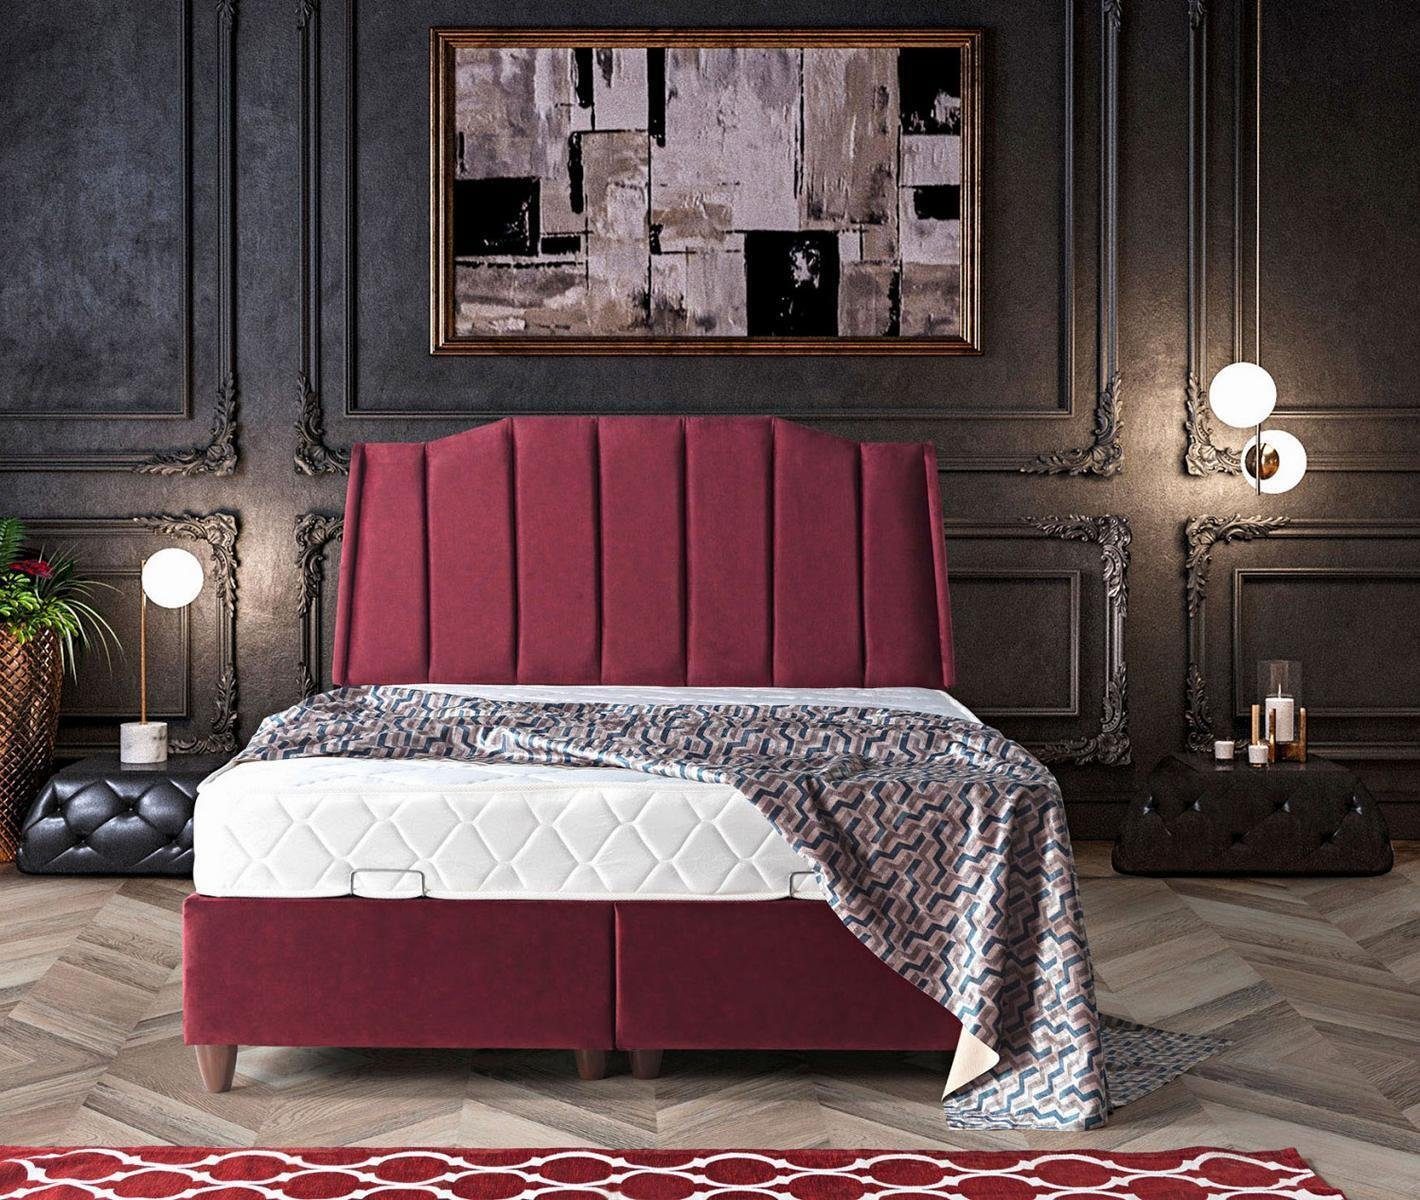 JVmoebel Bett Neu In Polster Möbel Europe Design Bett Made Betten Luxus Betten Schlafzimmer (Bett), Modern